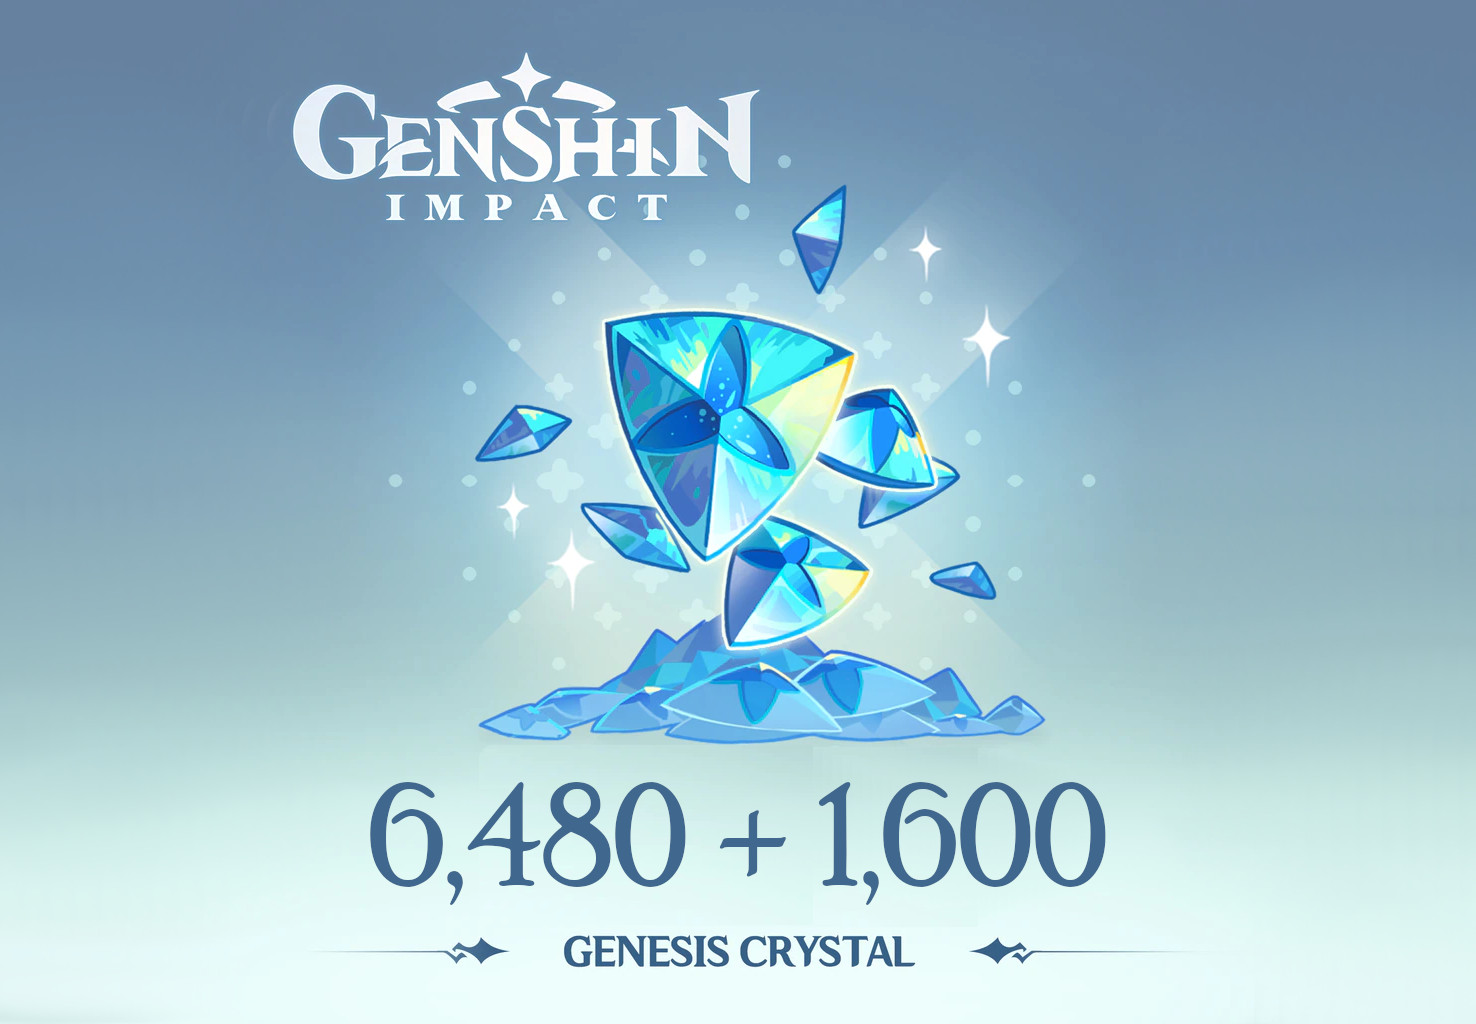 Genshin Impact - 6,480 + 1,600 Genesis Crystals Reidos Voucher, 107.29 usd